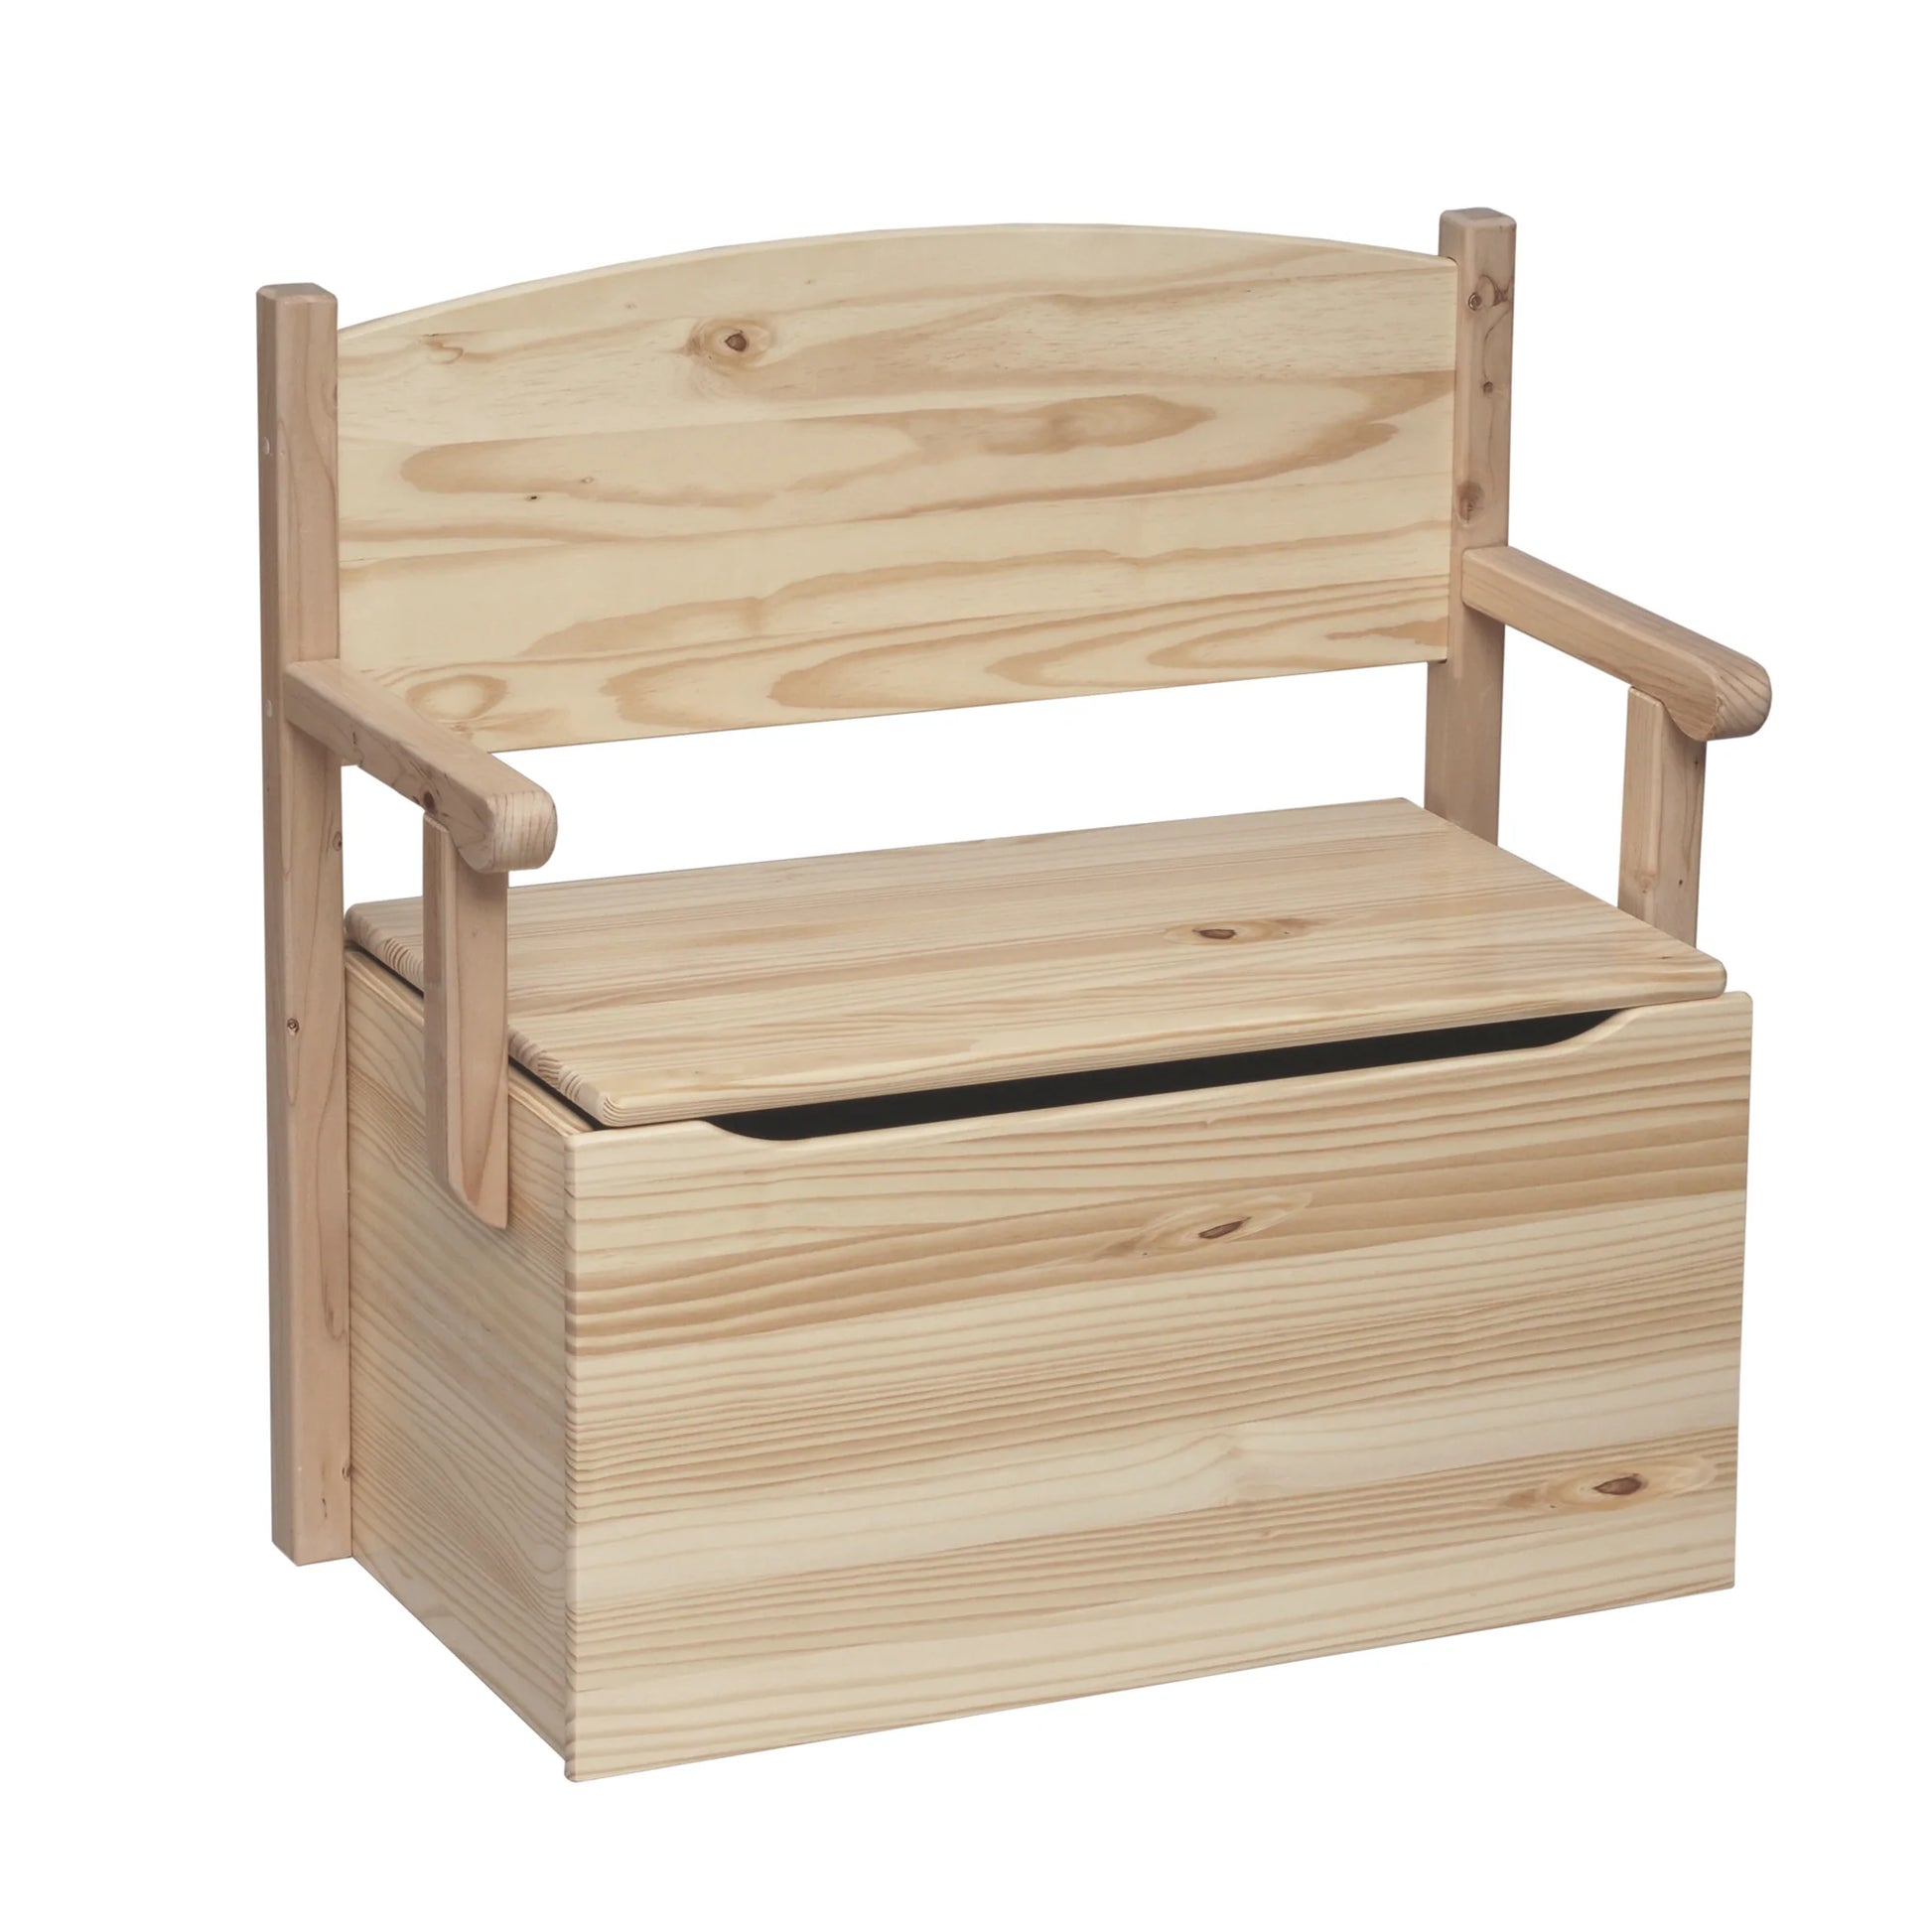 Little Colorado Wood Bench Toy Box - Fancy Nursery